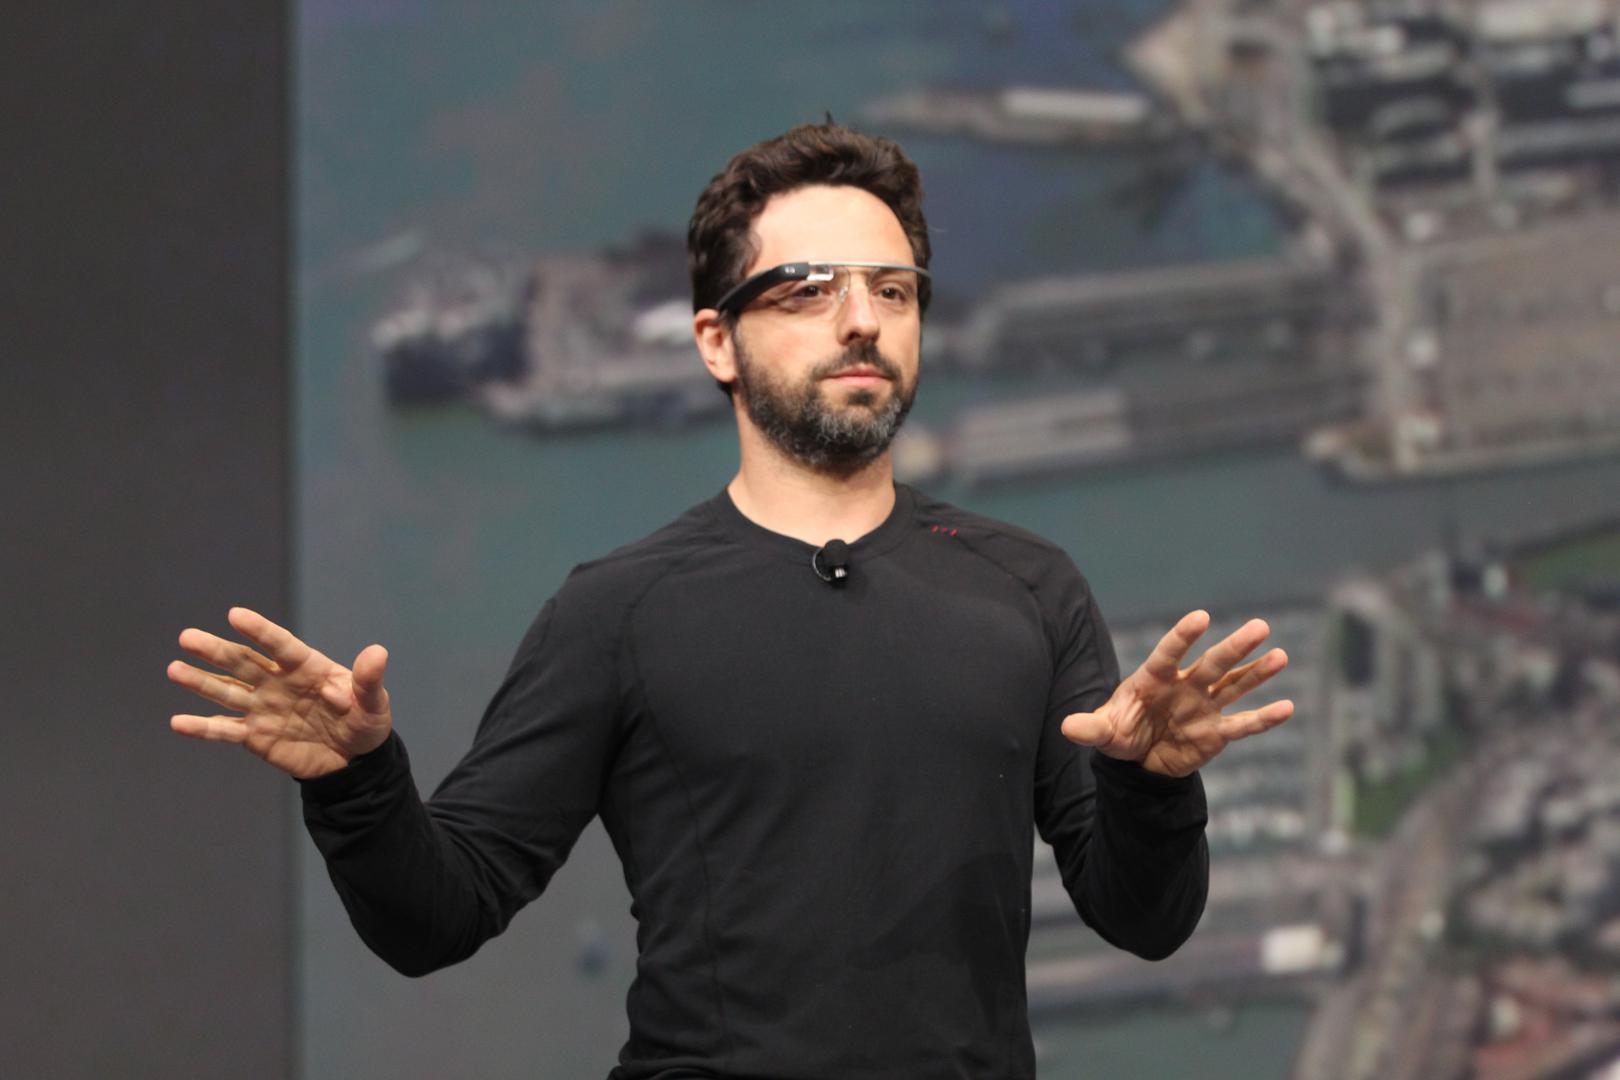 10. Sergey Brin (SAD) - Predsjednik Alphabeta koji u vlasništvu ima Google - 48,1 milijarda dolara 